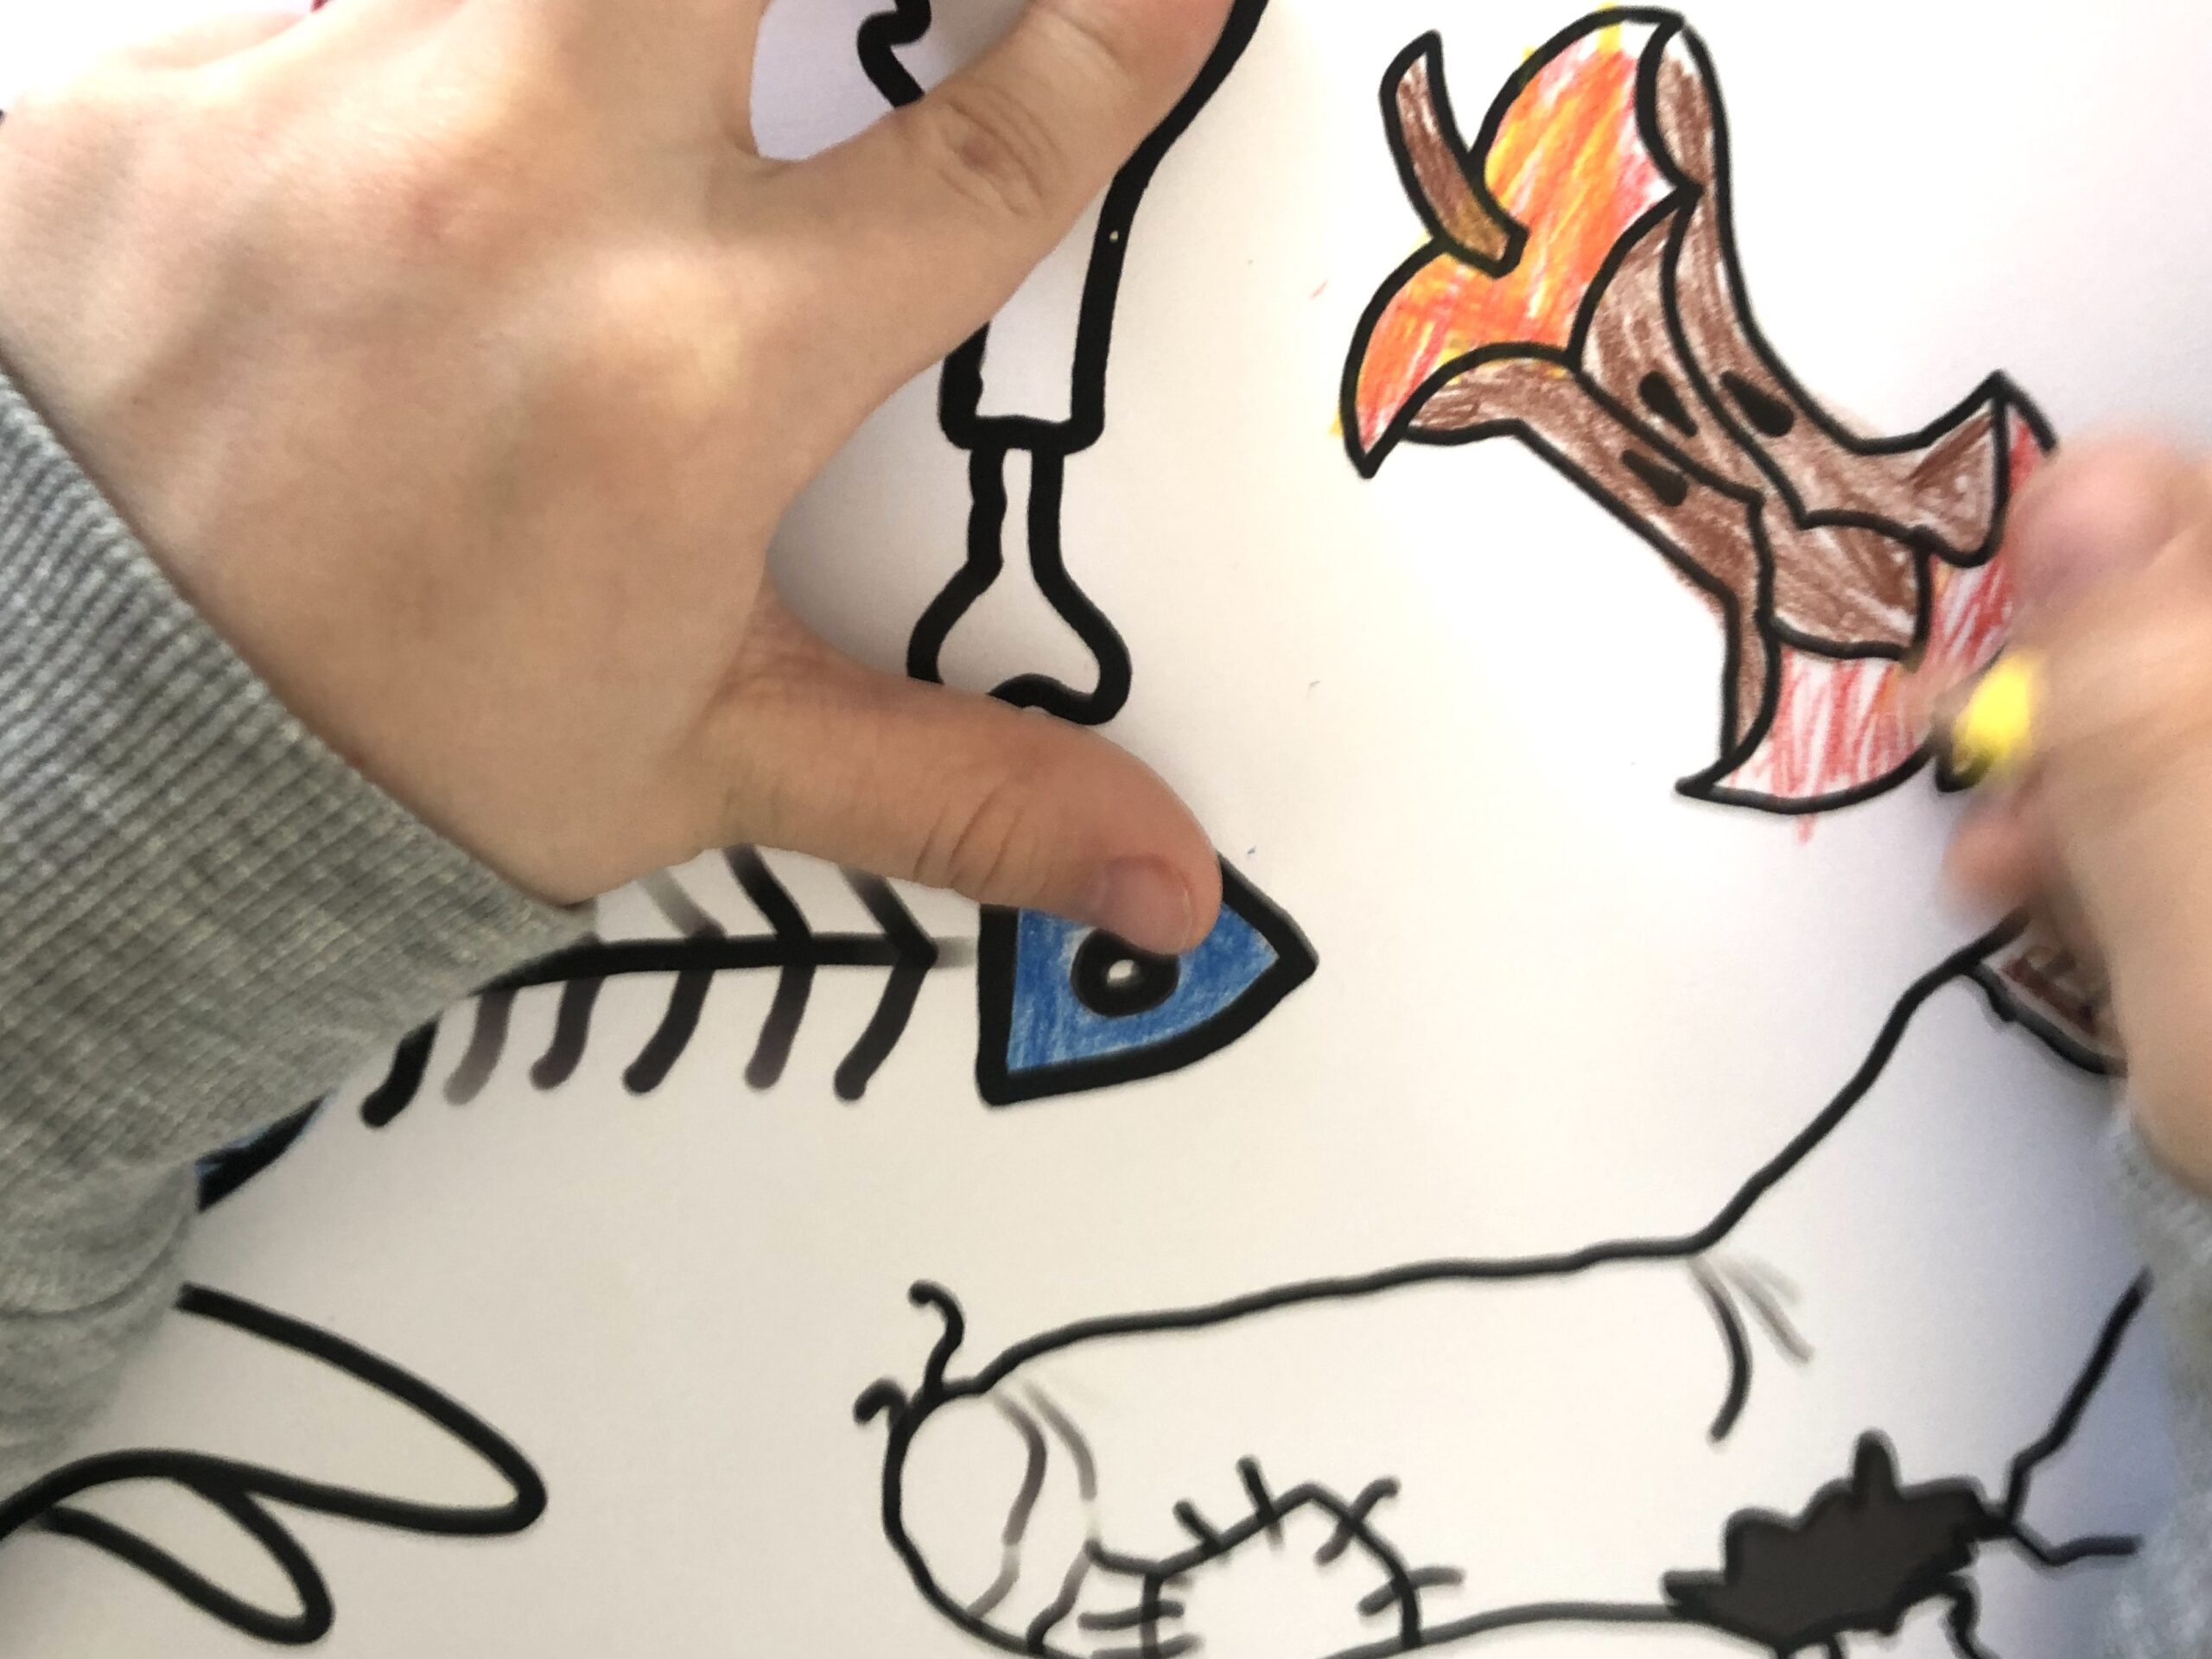 Bild zum Schritt 6 für das Bastel- und DIY-Abenteuer für Kinder: 'Dann malt ihr die Gegenstände der Vorlage mit Buntstiften aus.'